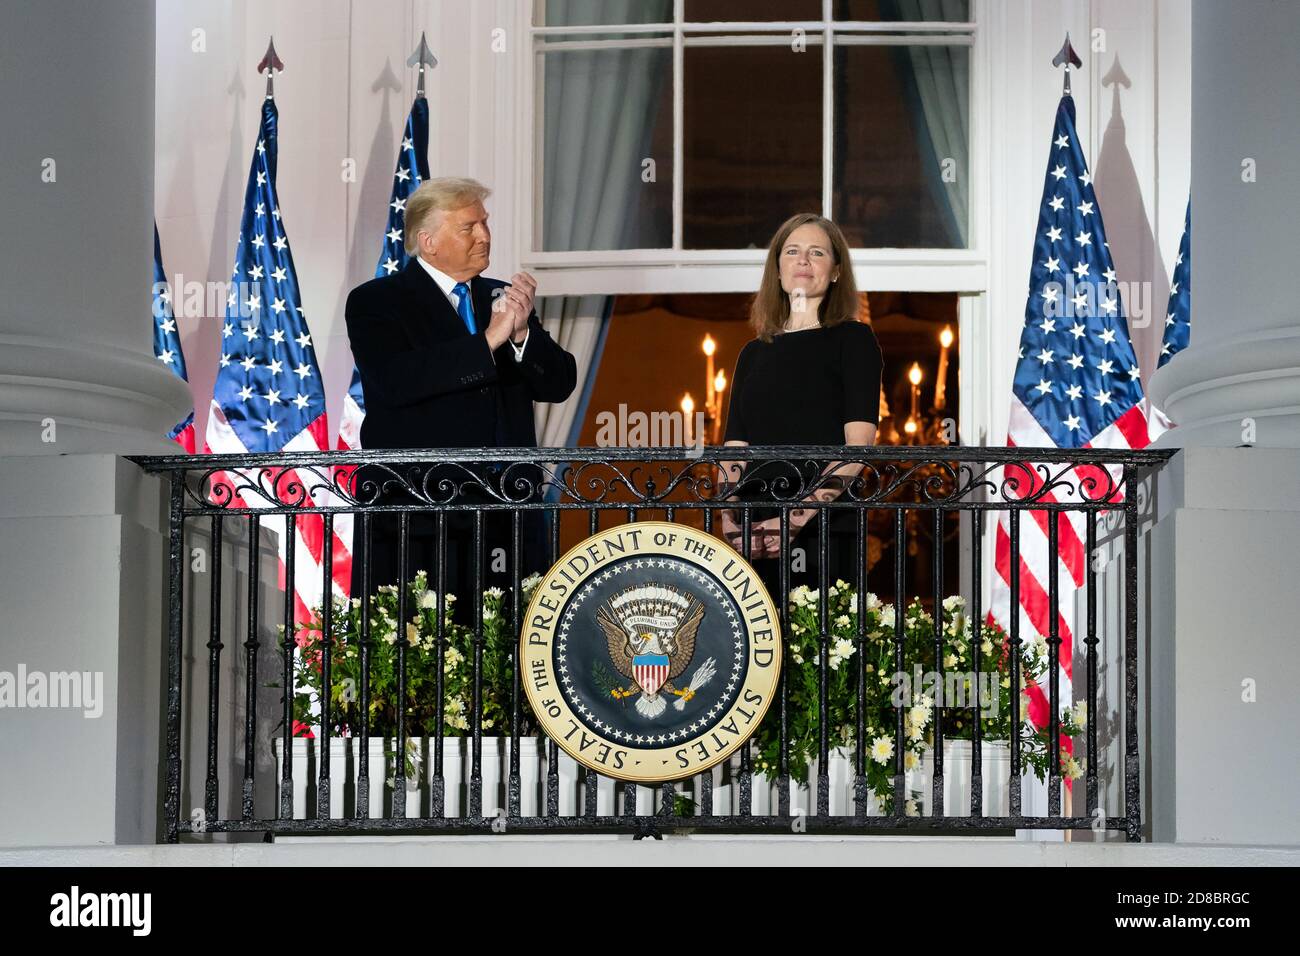 Präsident Donald J. Trump und Amy Coney Barrett, Associate Justice des Obersten Gerichtshofs der USA, stehen am Montag, den 26. Oktober 2020, nach der Vereidigung von Richter Barrett auf dem South Lawn des Weißen Hauses zusammen auf dem Balkon des Blue Room. (USA) Stockfoto